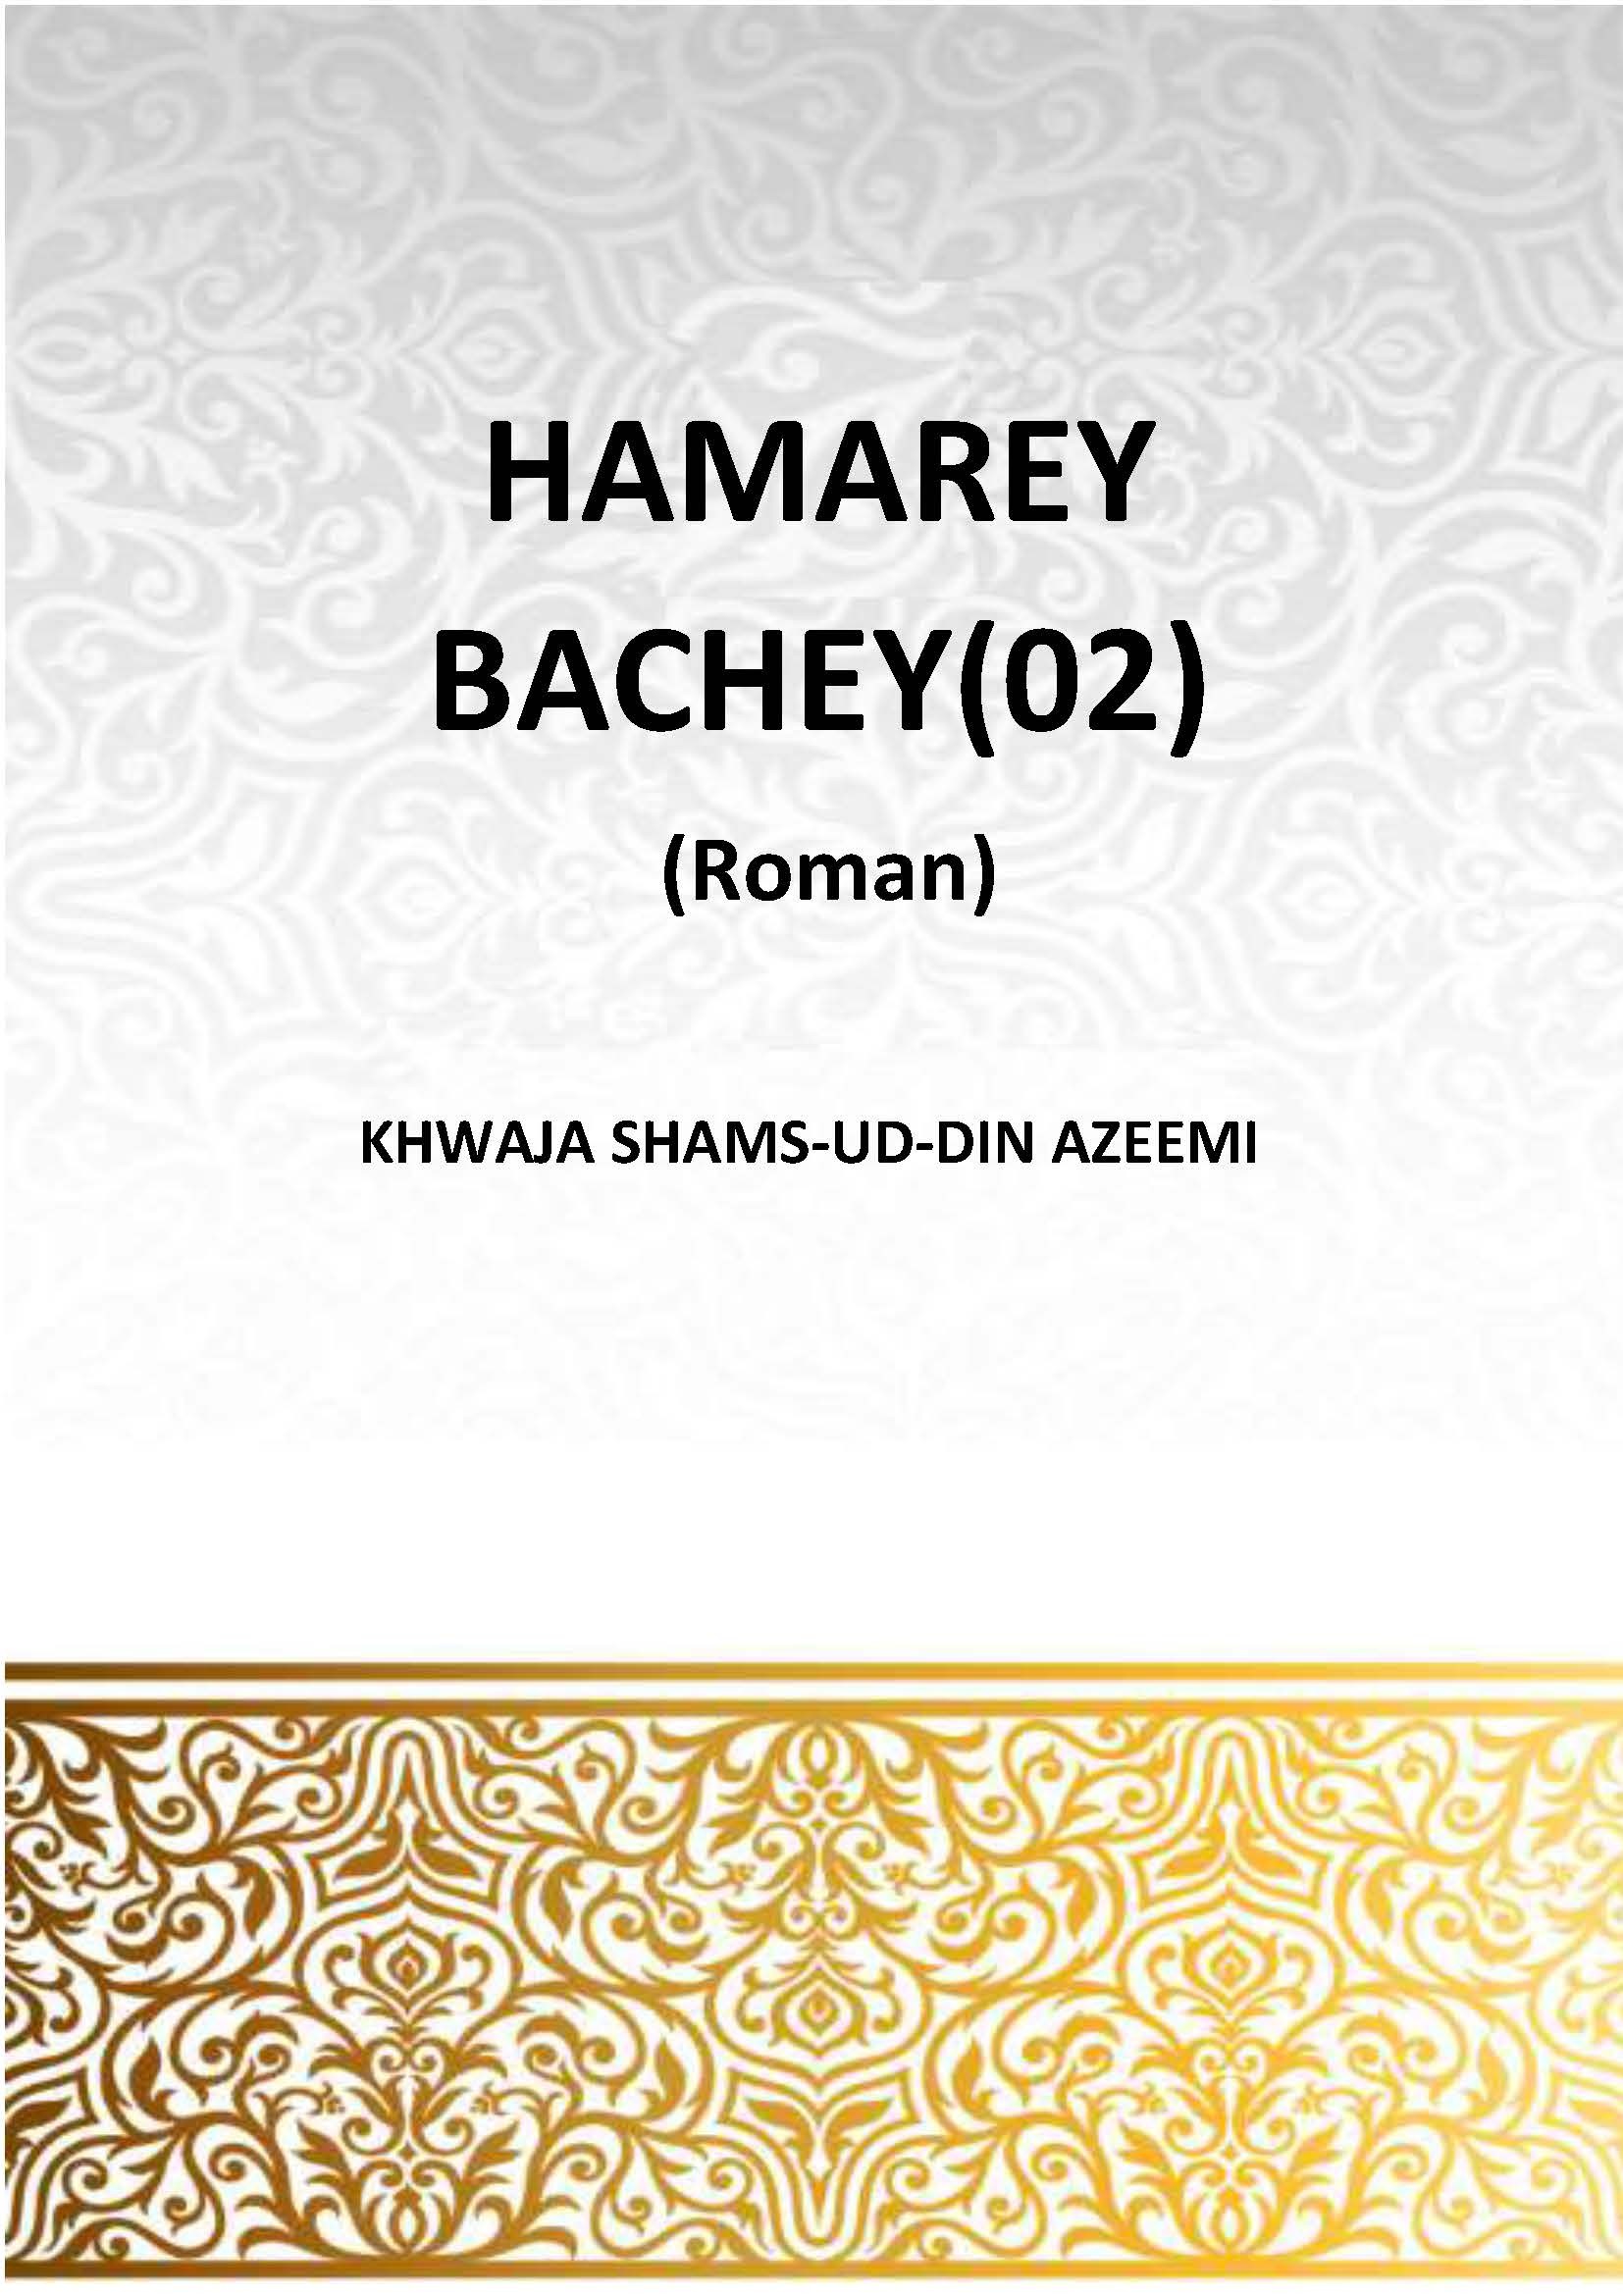 HAMARE BACHCHEY Serial-2 (Roman)